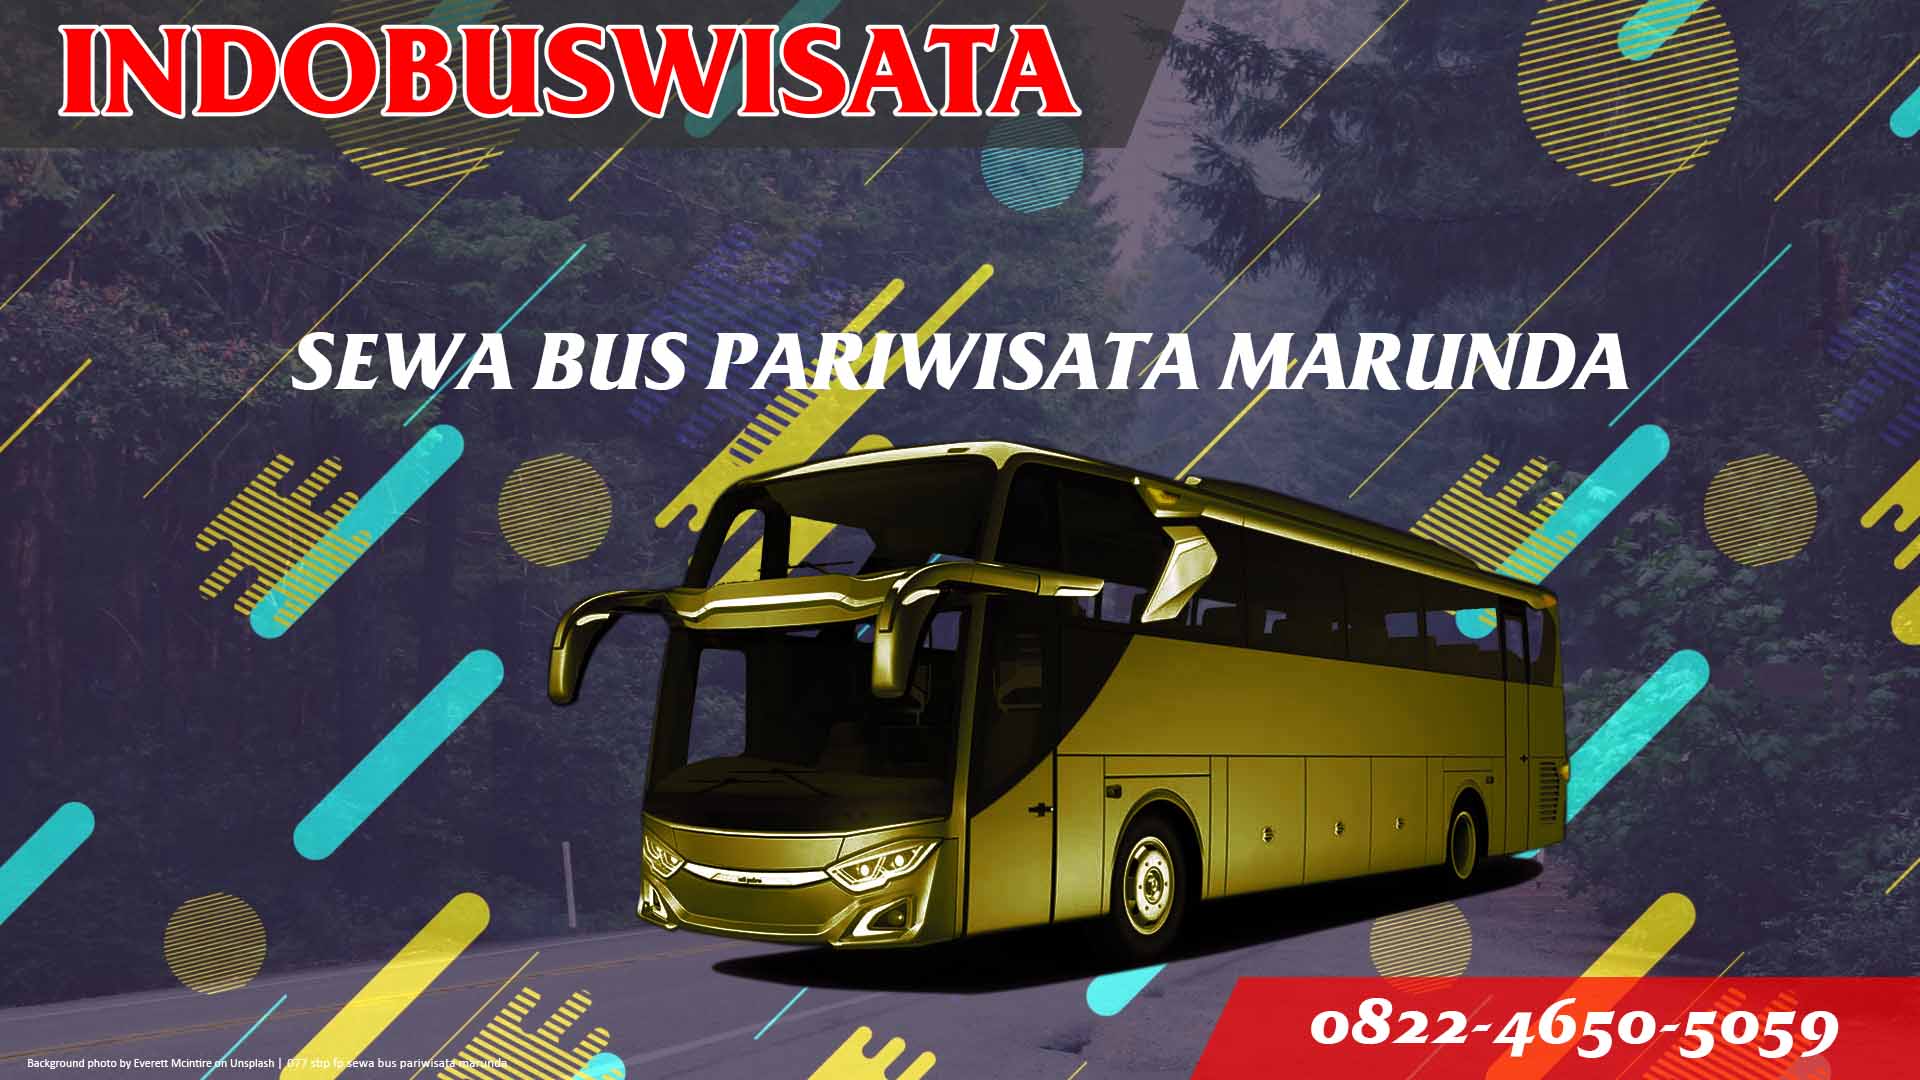 077 Sbp Fp Sewa Bus Pariwisata Marunda Indobuswisata